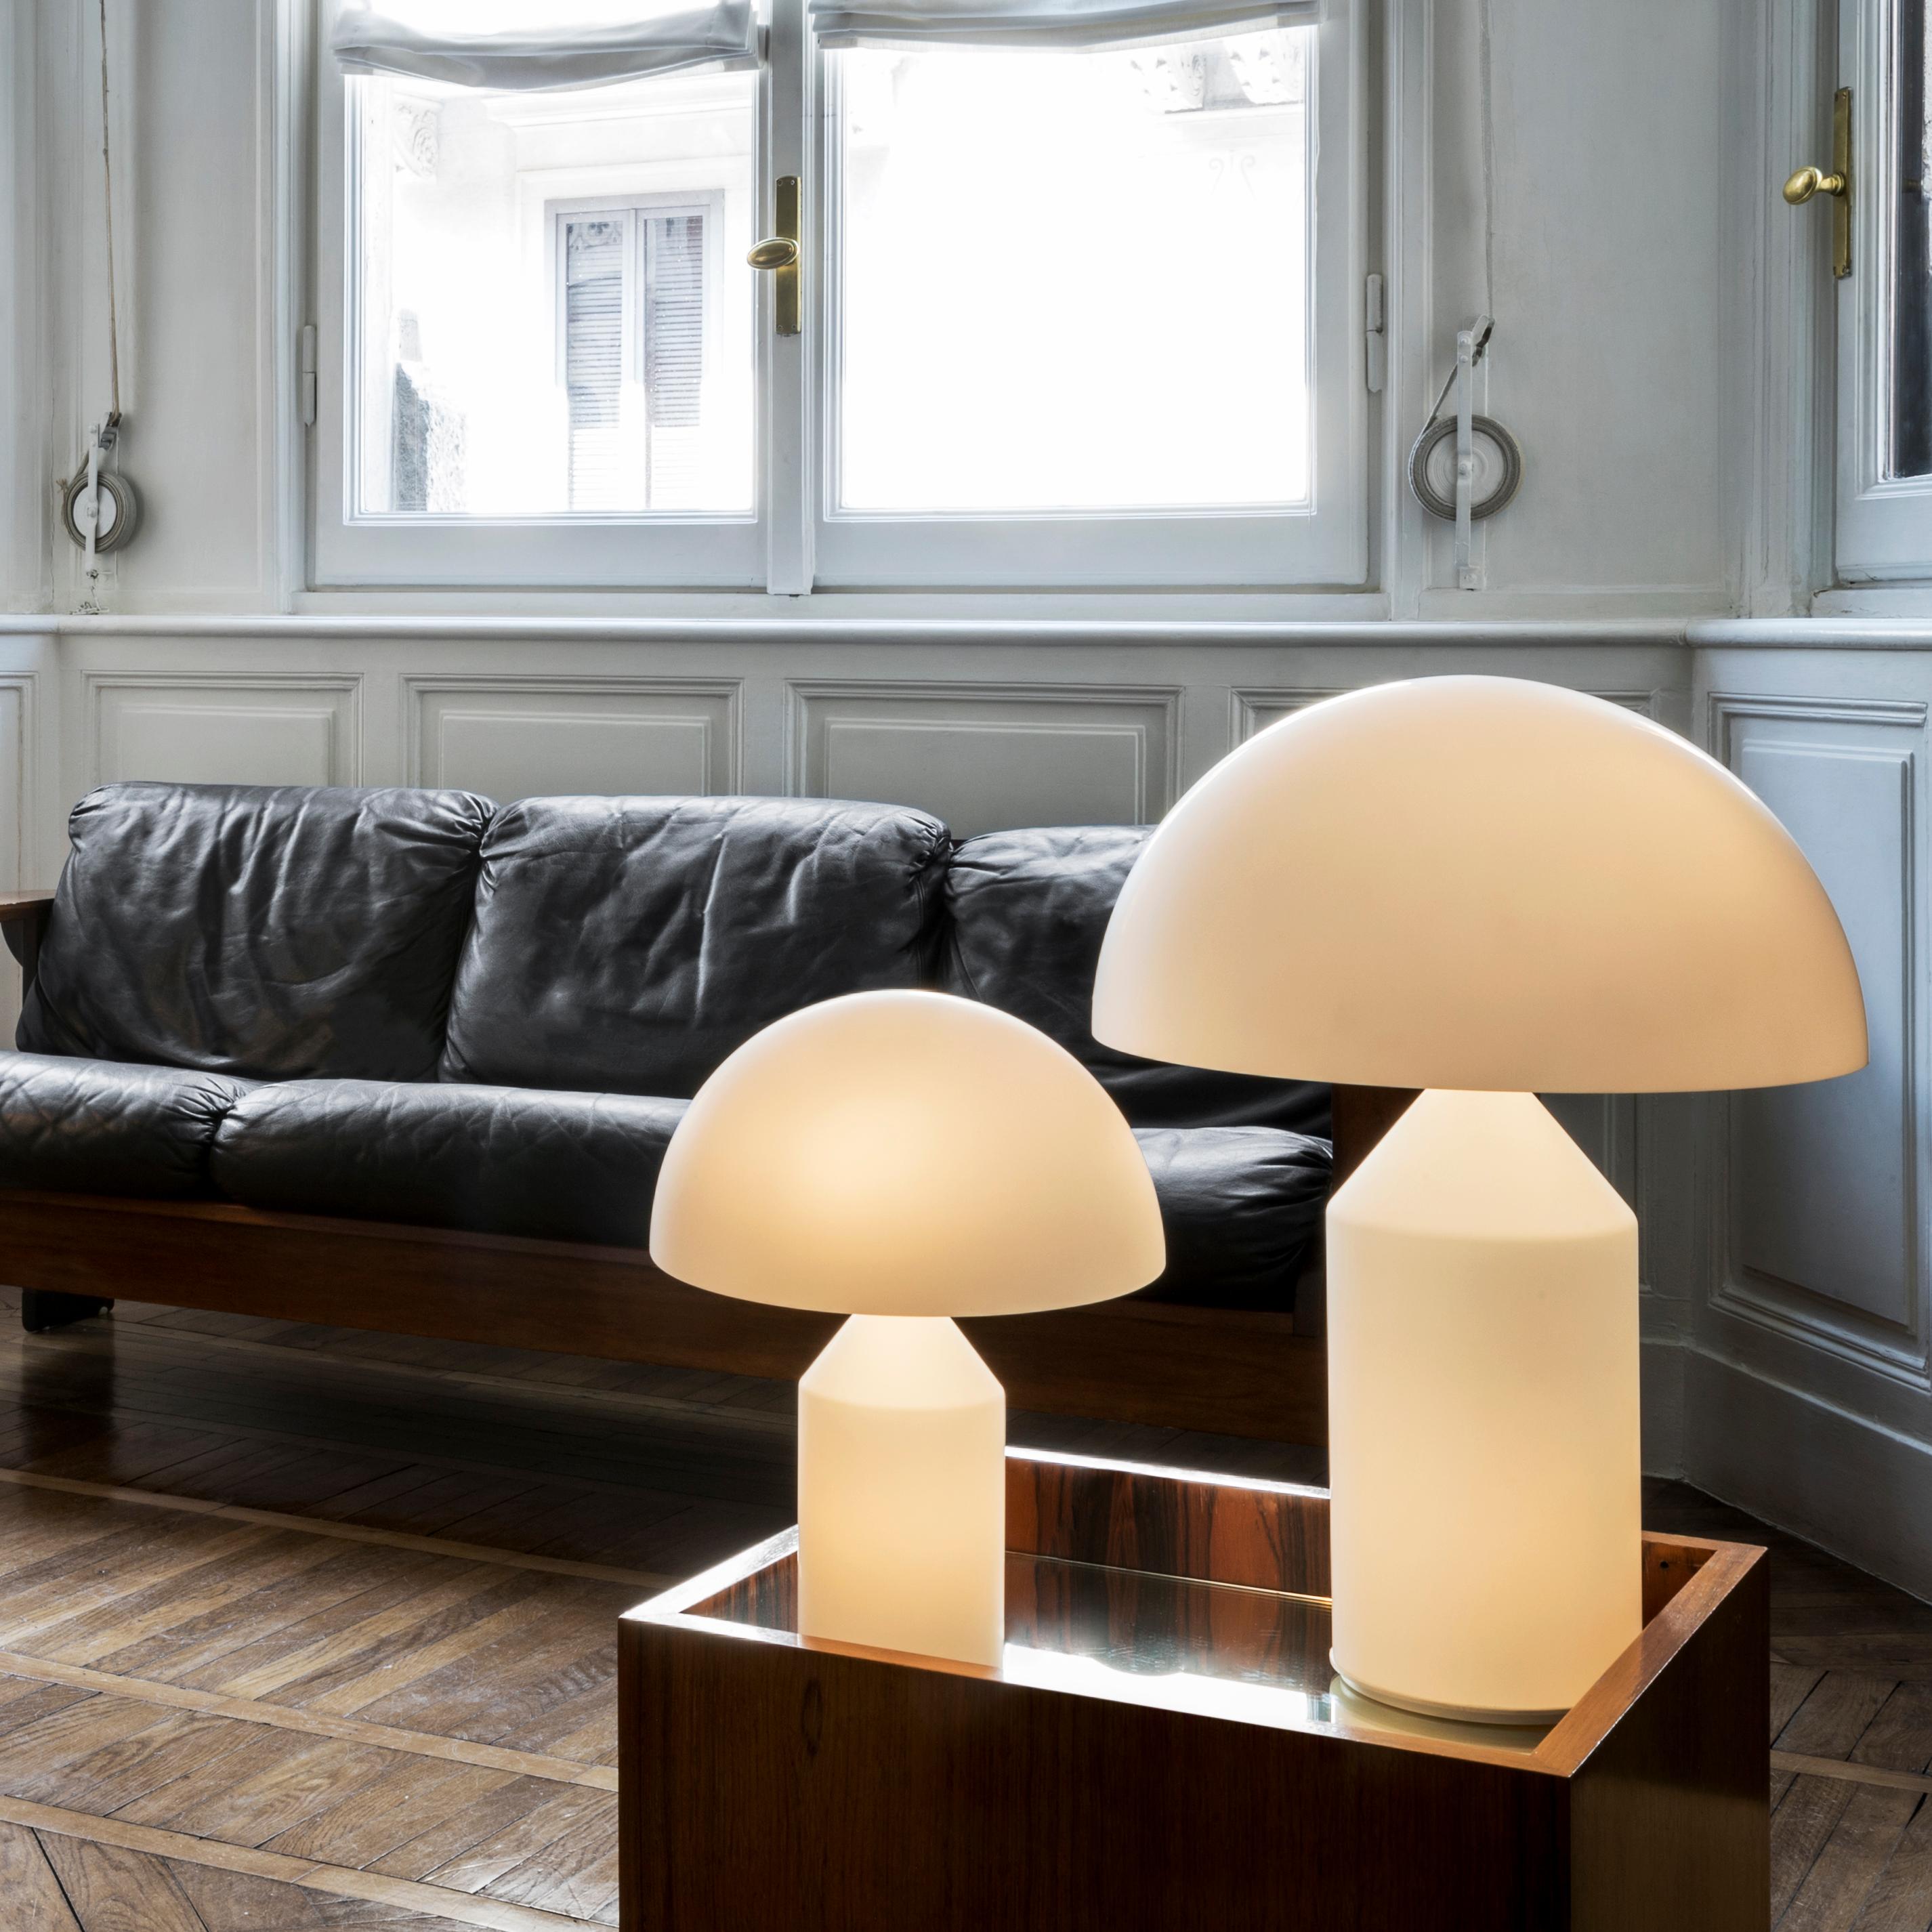 Italian Set of 'Atollo' Medium and Small Glass Table Lamp Designed by Vico Magistretti